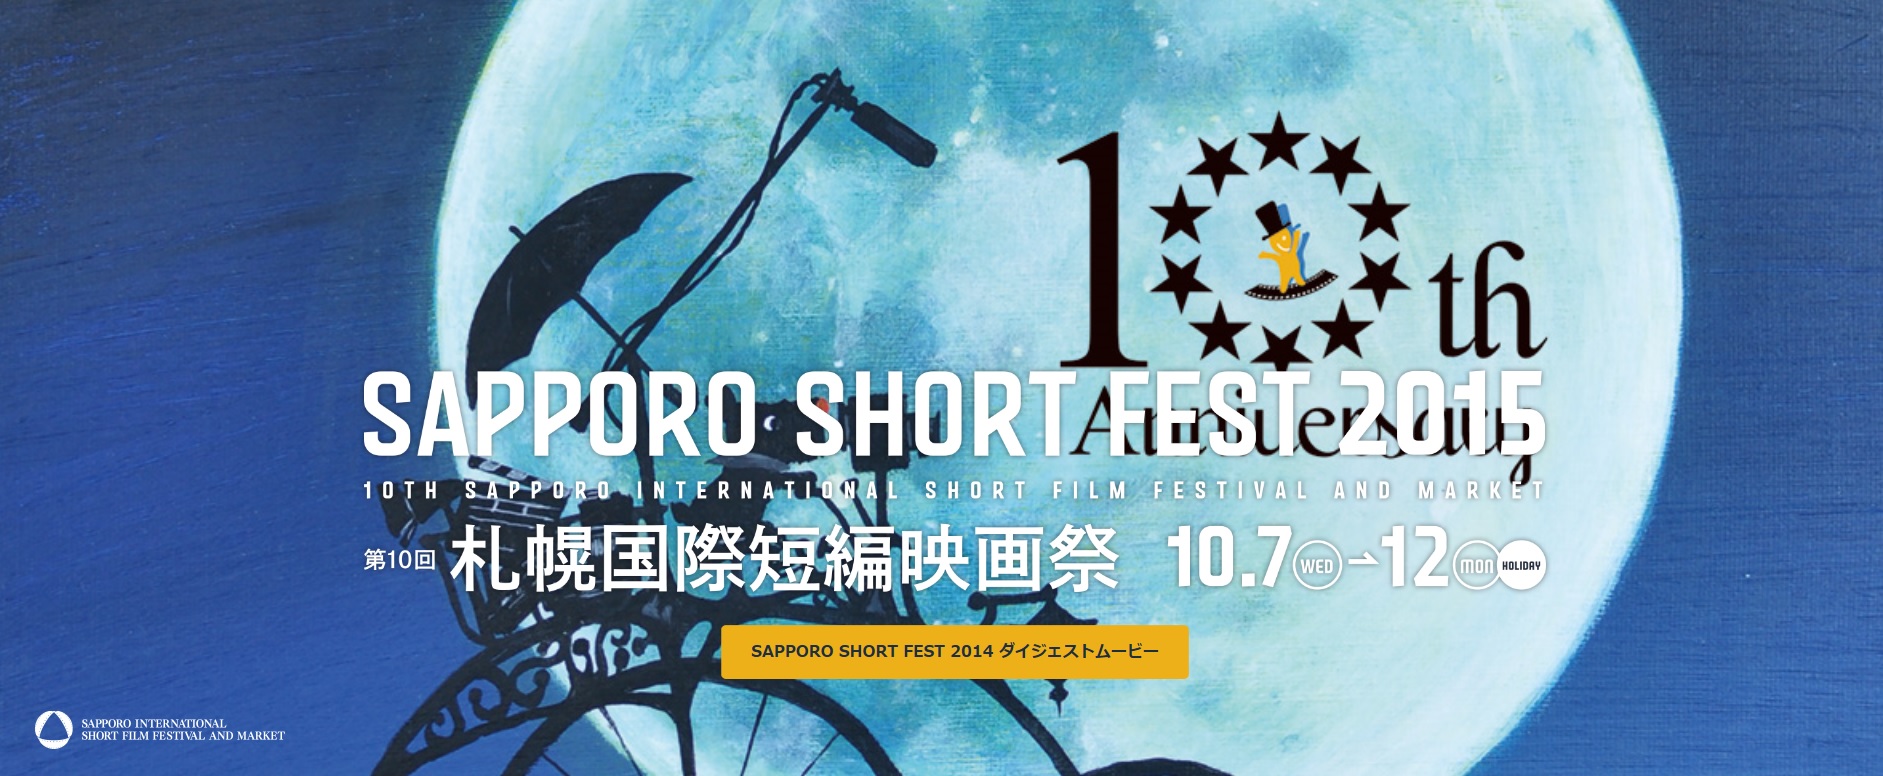 2015札幌国際短編映画祭.jpg